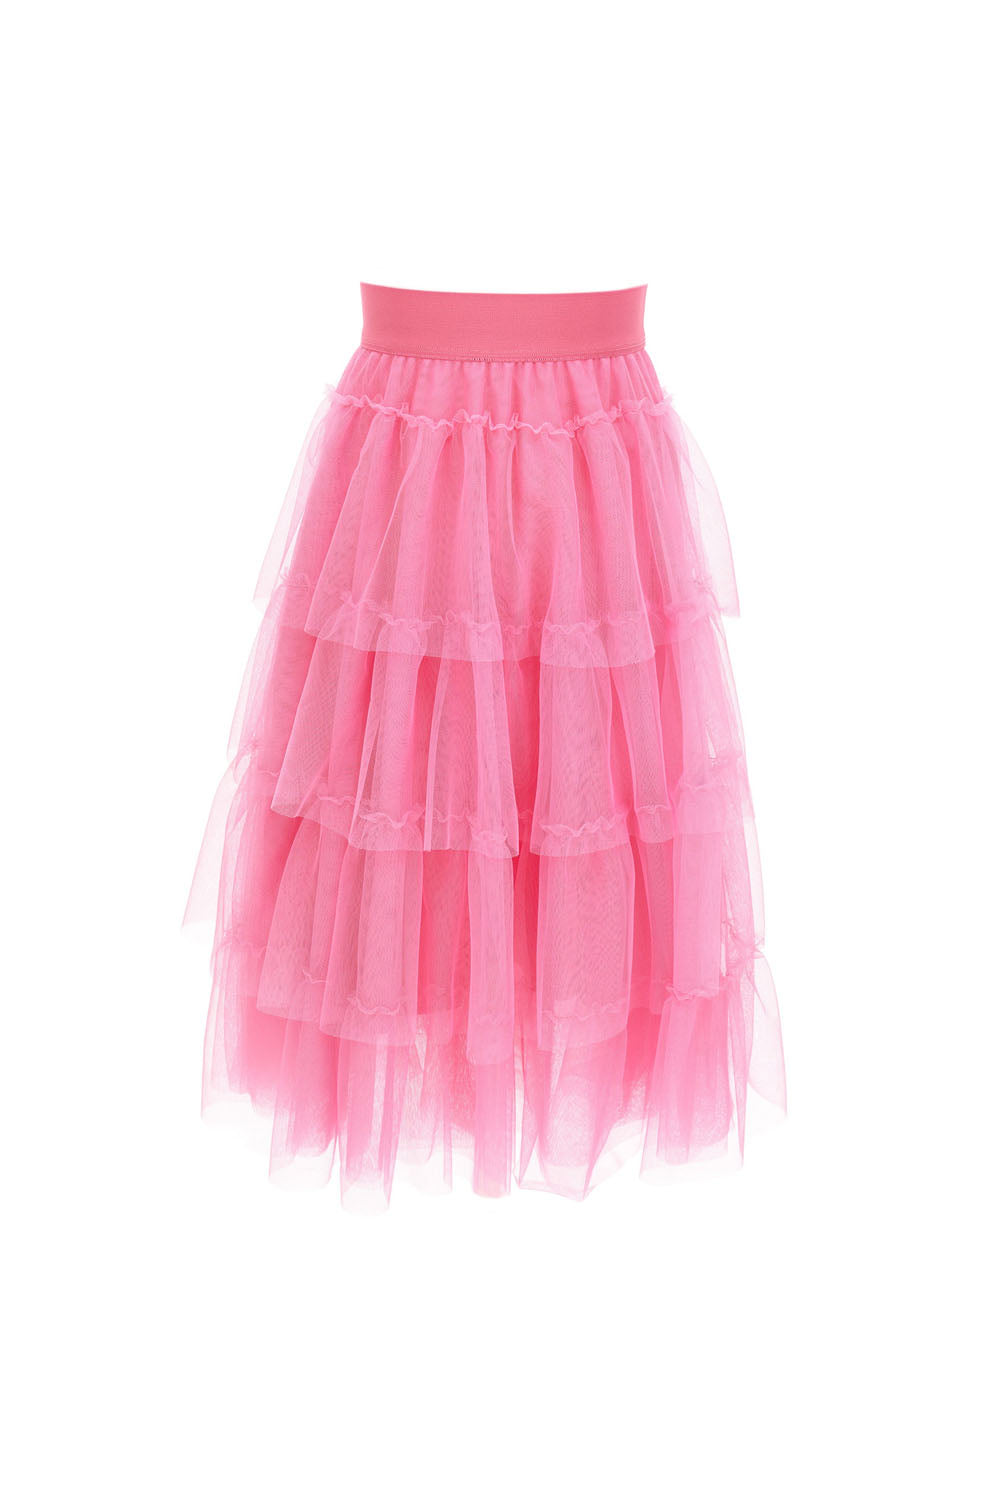 Layered Tule Skirt for Girls - Maison7